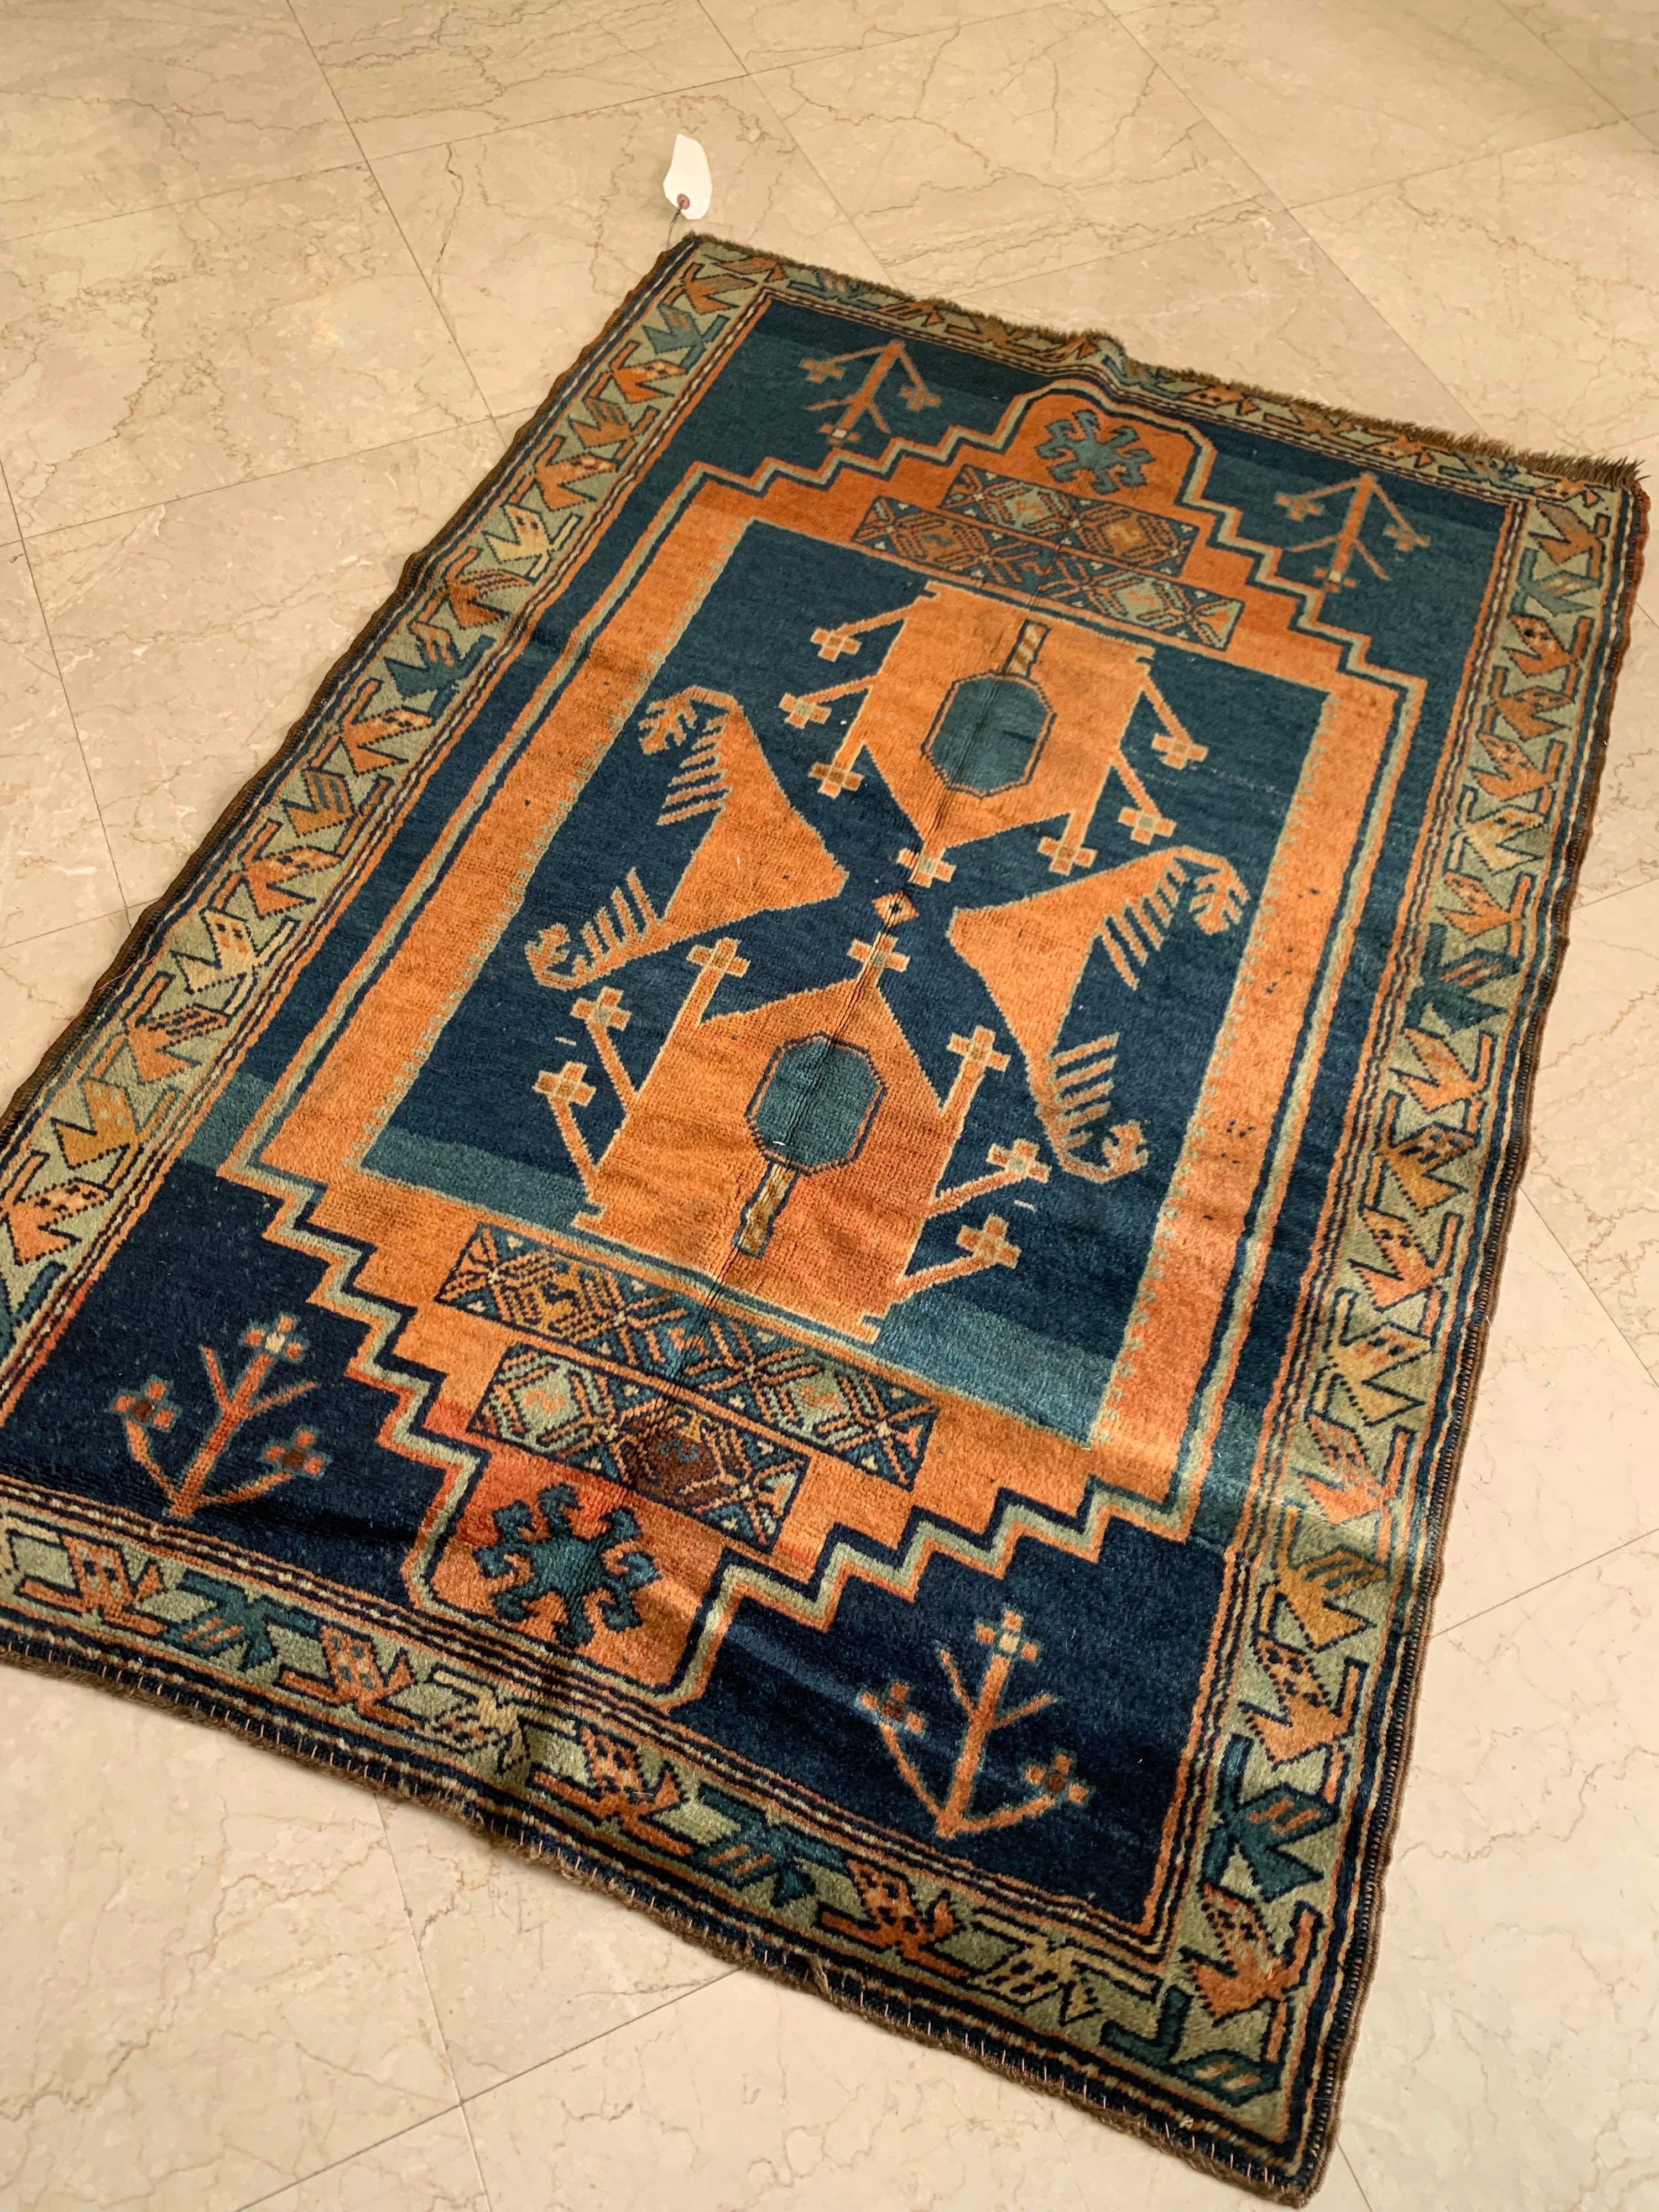 Dies ist eine schöne antike kaukasischen orange und blau braun Kazak Tribal Geometrische Teppich circa 1920-1930 Messung 3,2 x 4,5 ft.